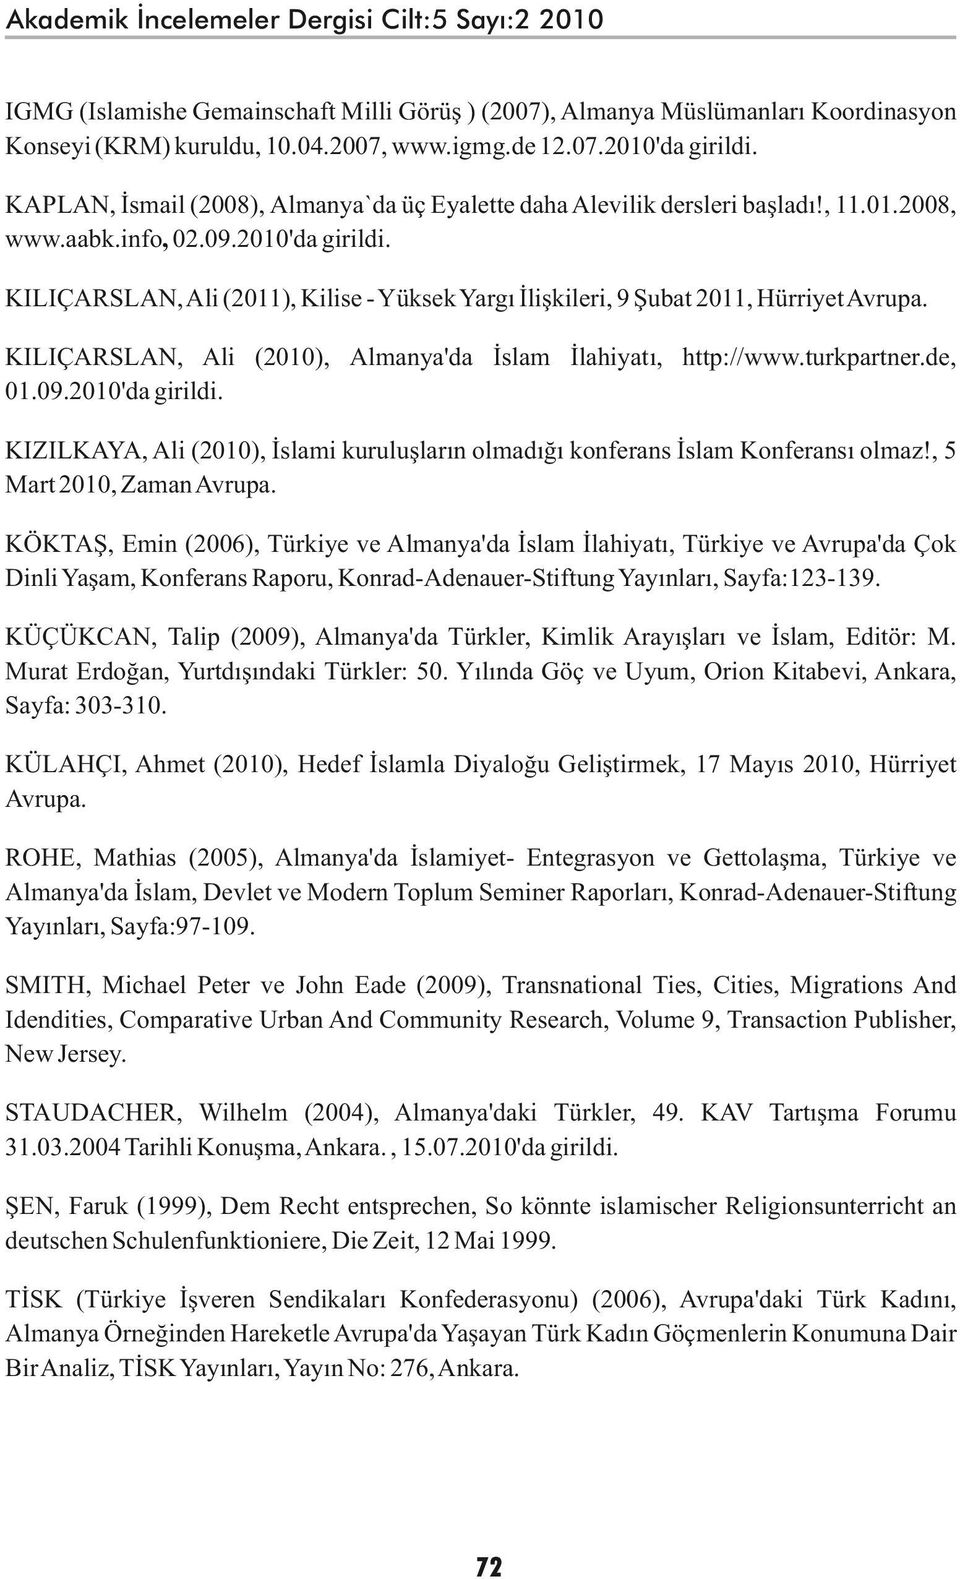 KILIÇARSLAN, Ali (2011), Kilise - Yüksek Yargı İlişkileri, 9 Şubat 2011, Hürriyet Avrupa. KILIÇARSLAN, Ali (2010), Almanya'da İslam İlahiyatı, http://www.turkpartner.de, 01.09.2010'da girildi.